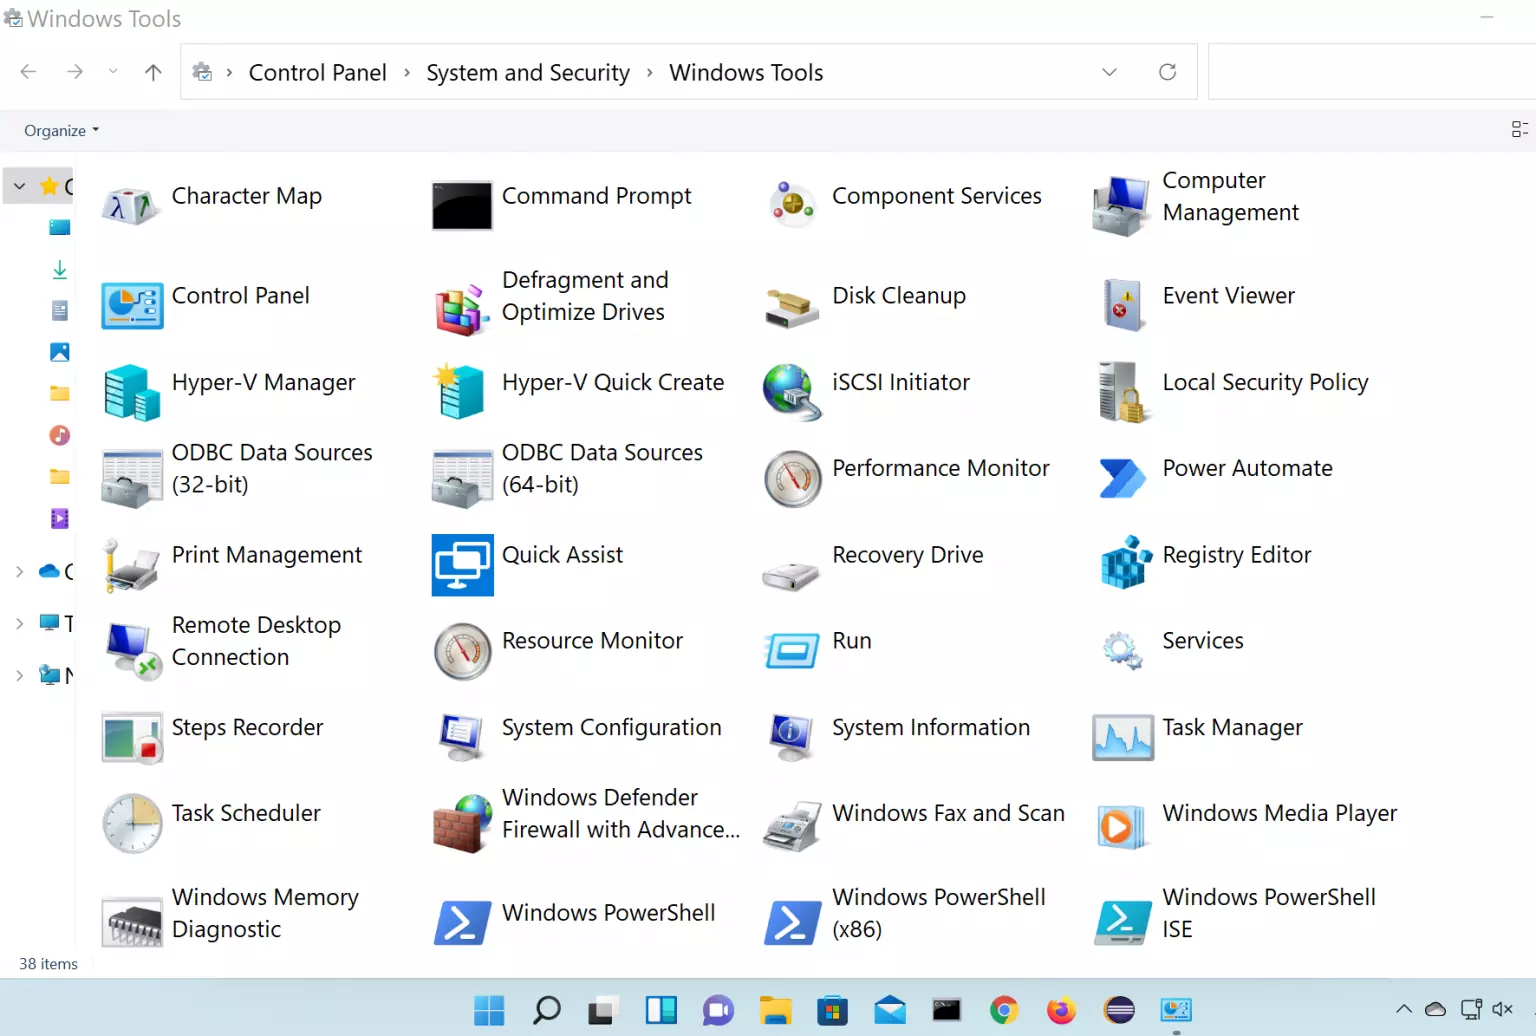 windows admin tools download